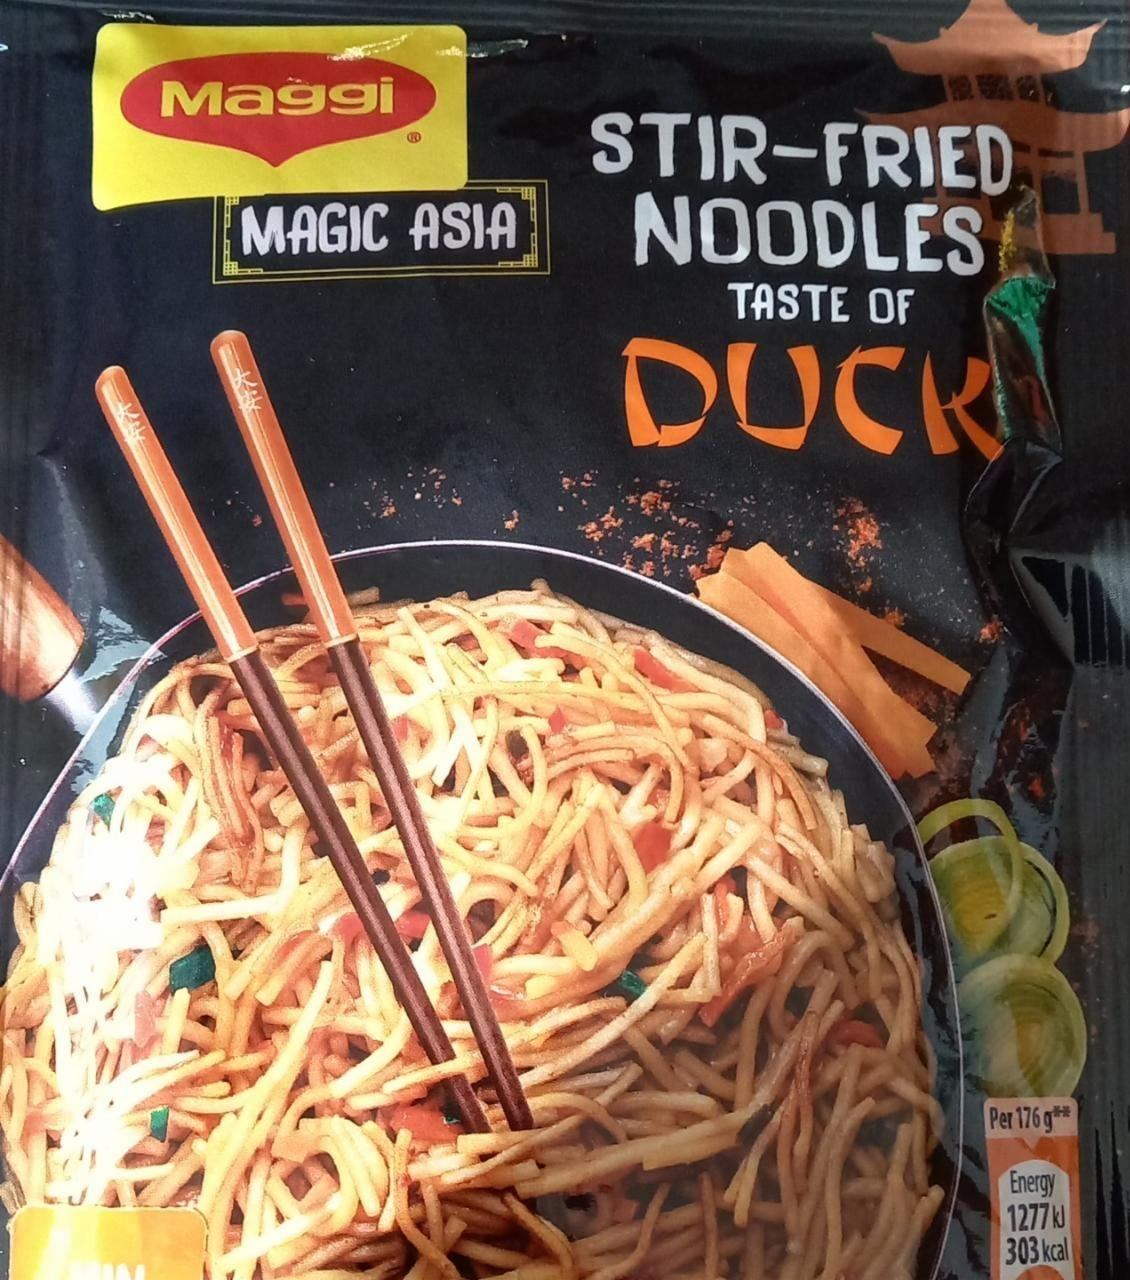 Fotografie - Stir-fried noodles taste of duck Maggi